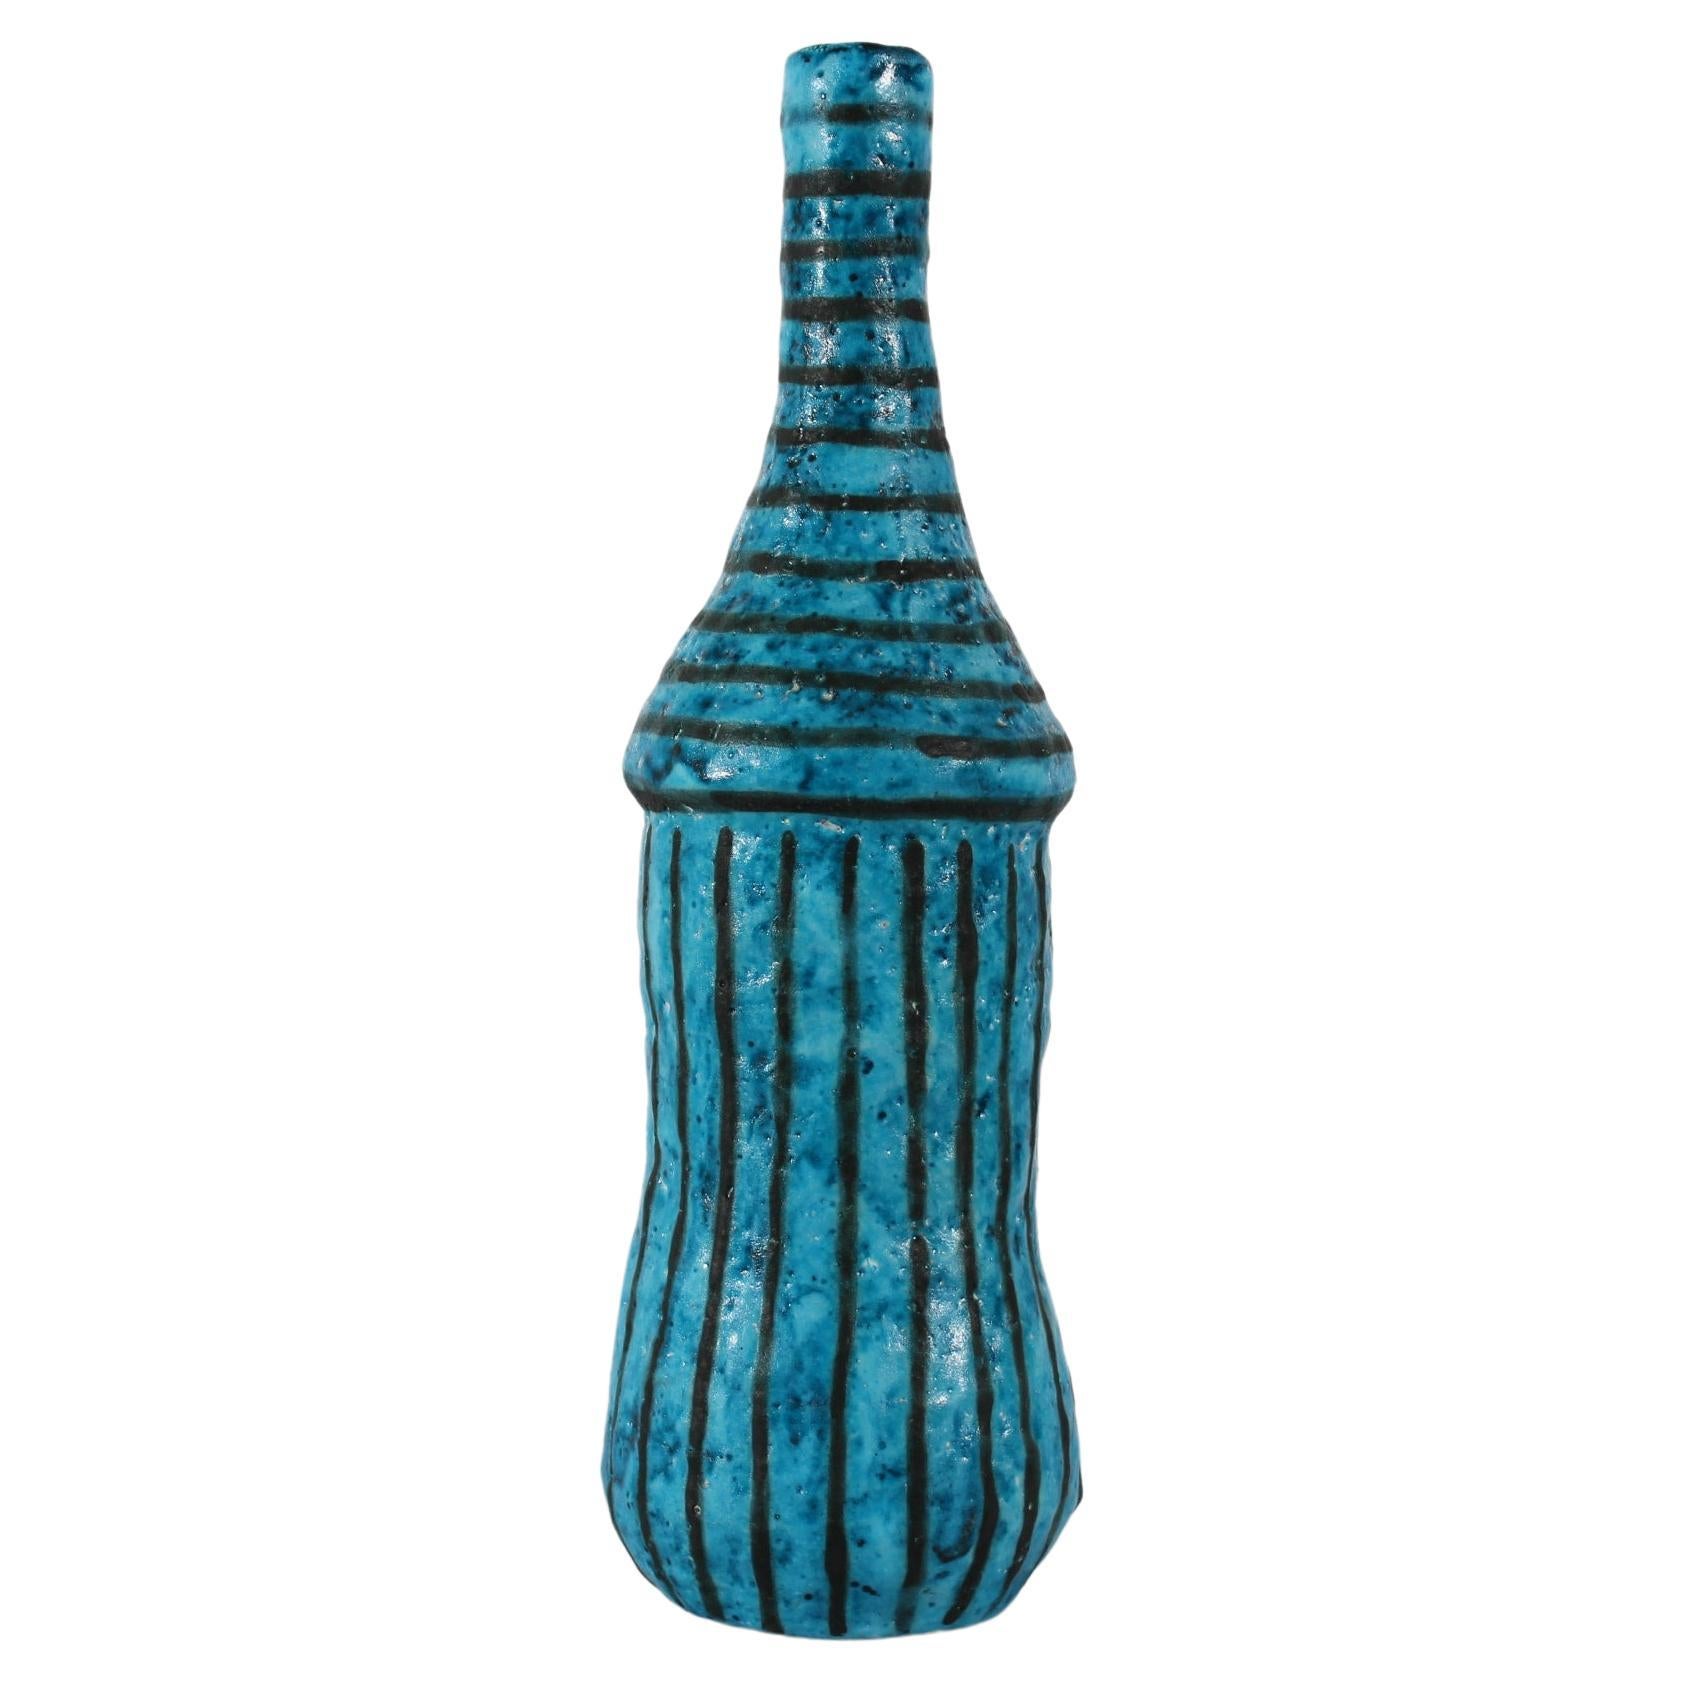 Grand et mince vase bouteille artistique du céramiste italien Guido Gambone (1909-1969), vers les années 1950.
Le vase légèrement asymétrique est décoré d'une glaçure turquoise mate avec des rayures noires.

Signé : Gambone Italie
Tampon avec un